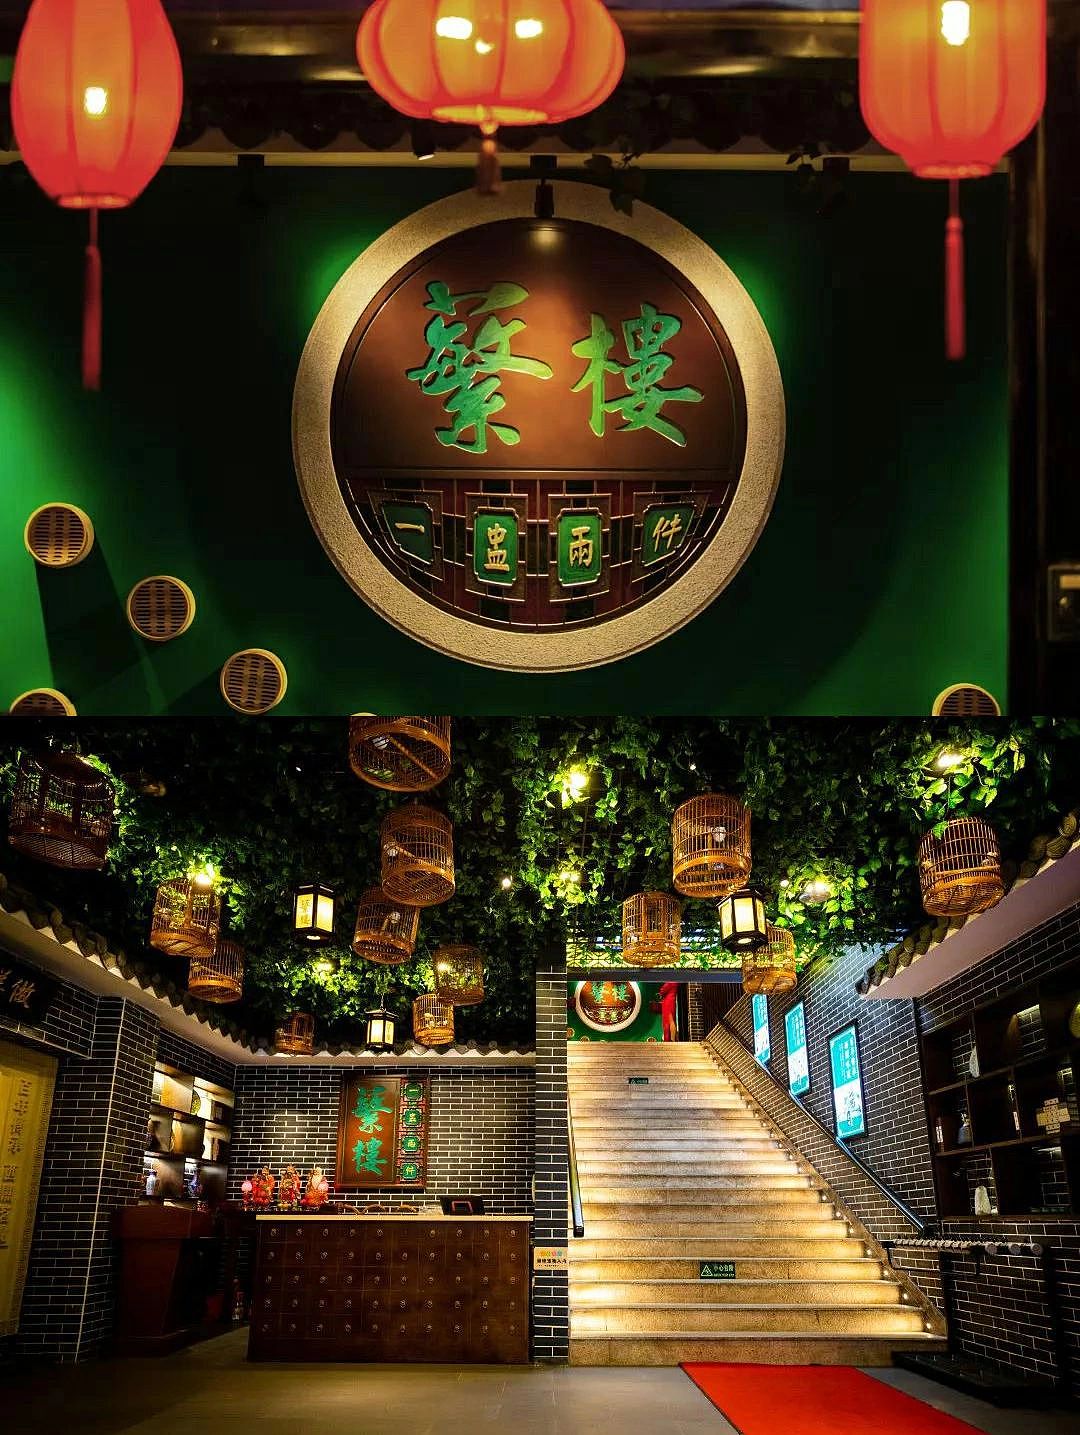 优雅中式风格茶馆屏风装修效果图- 中国风